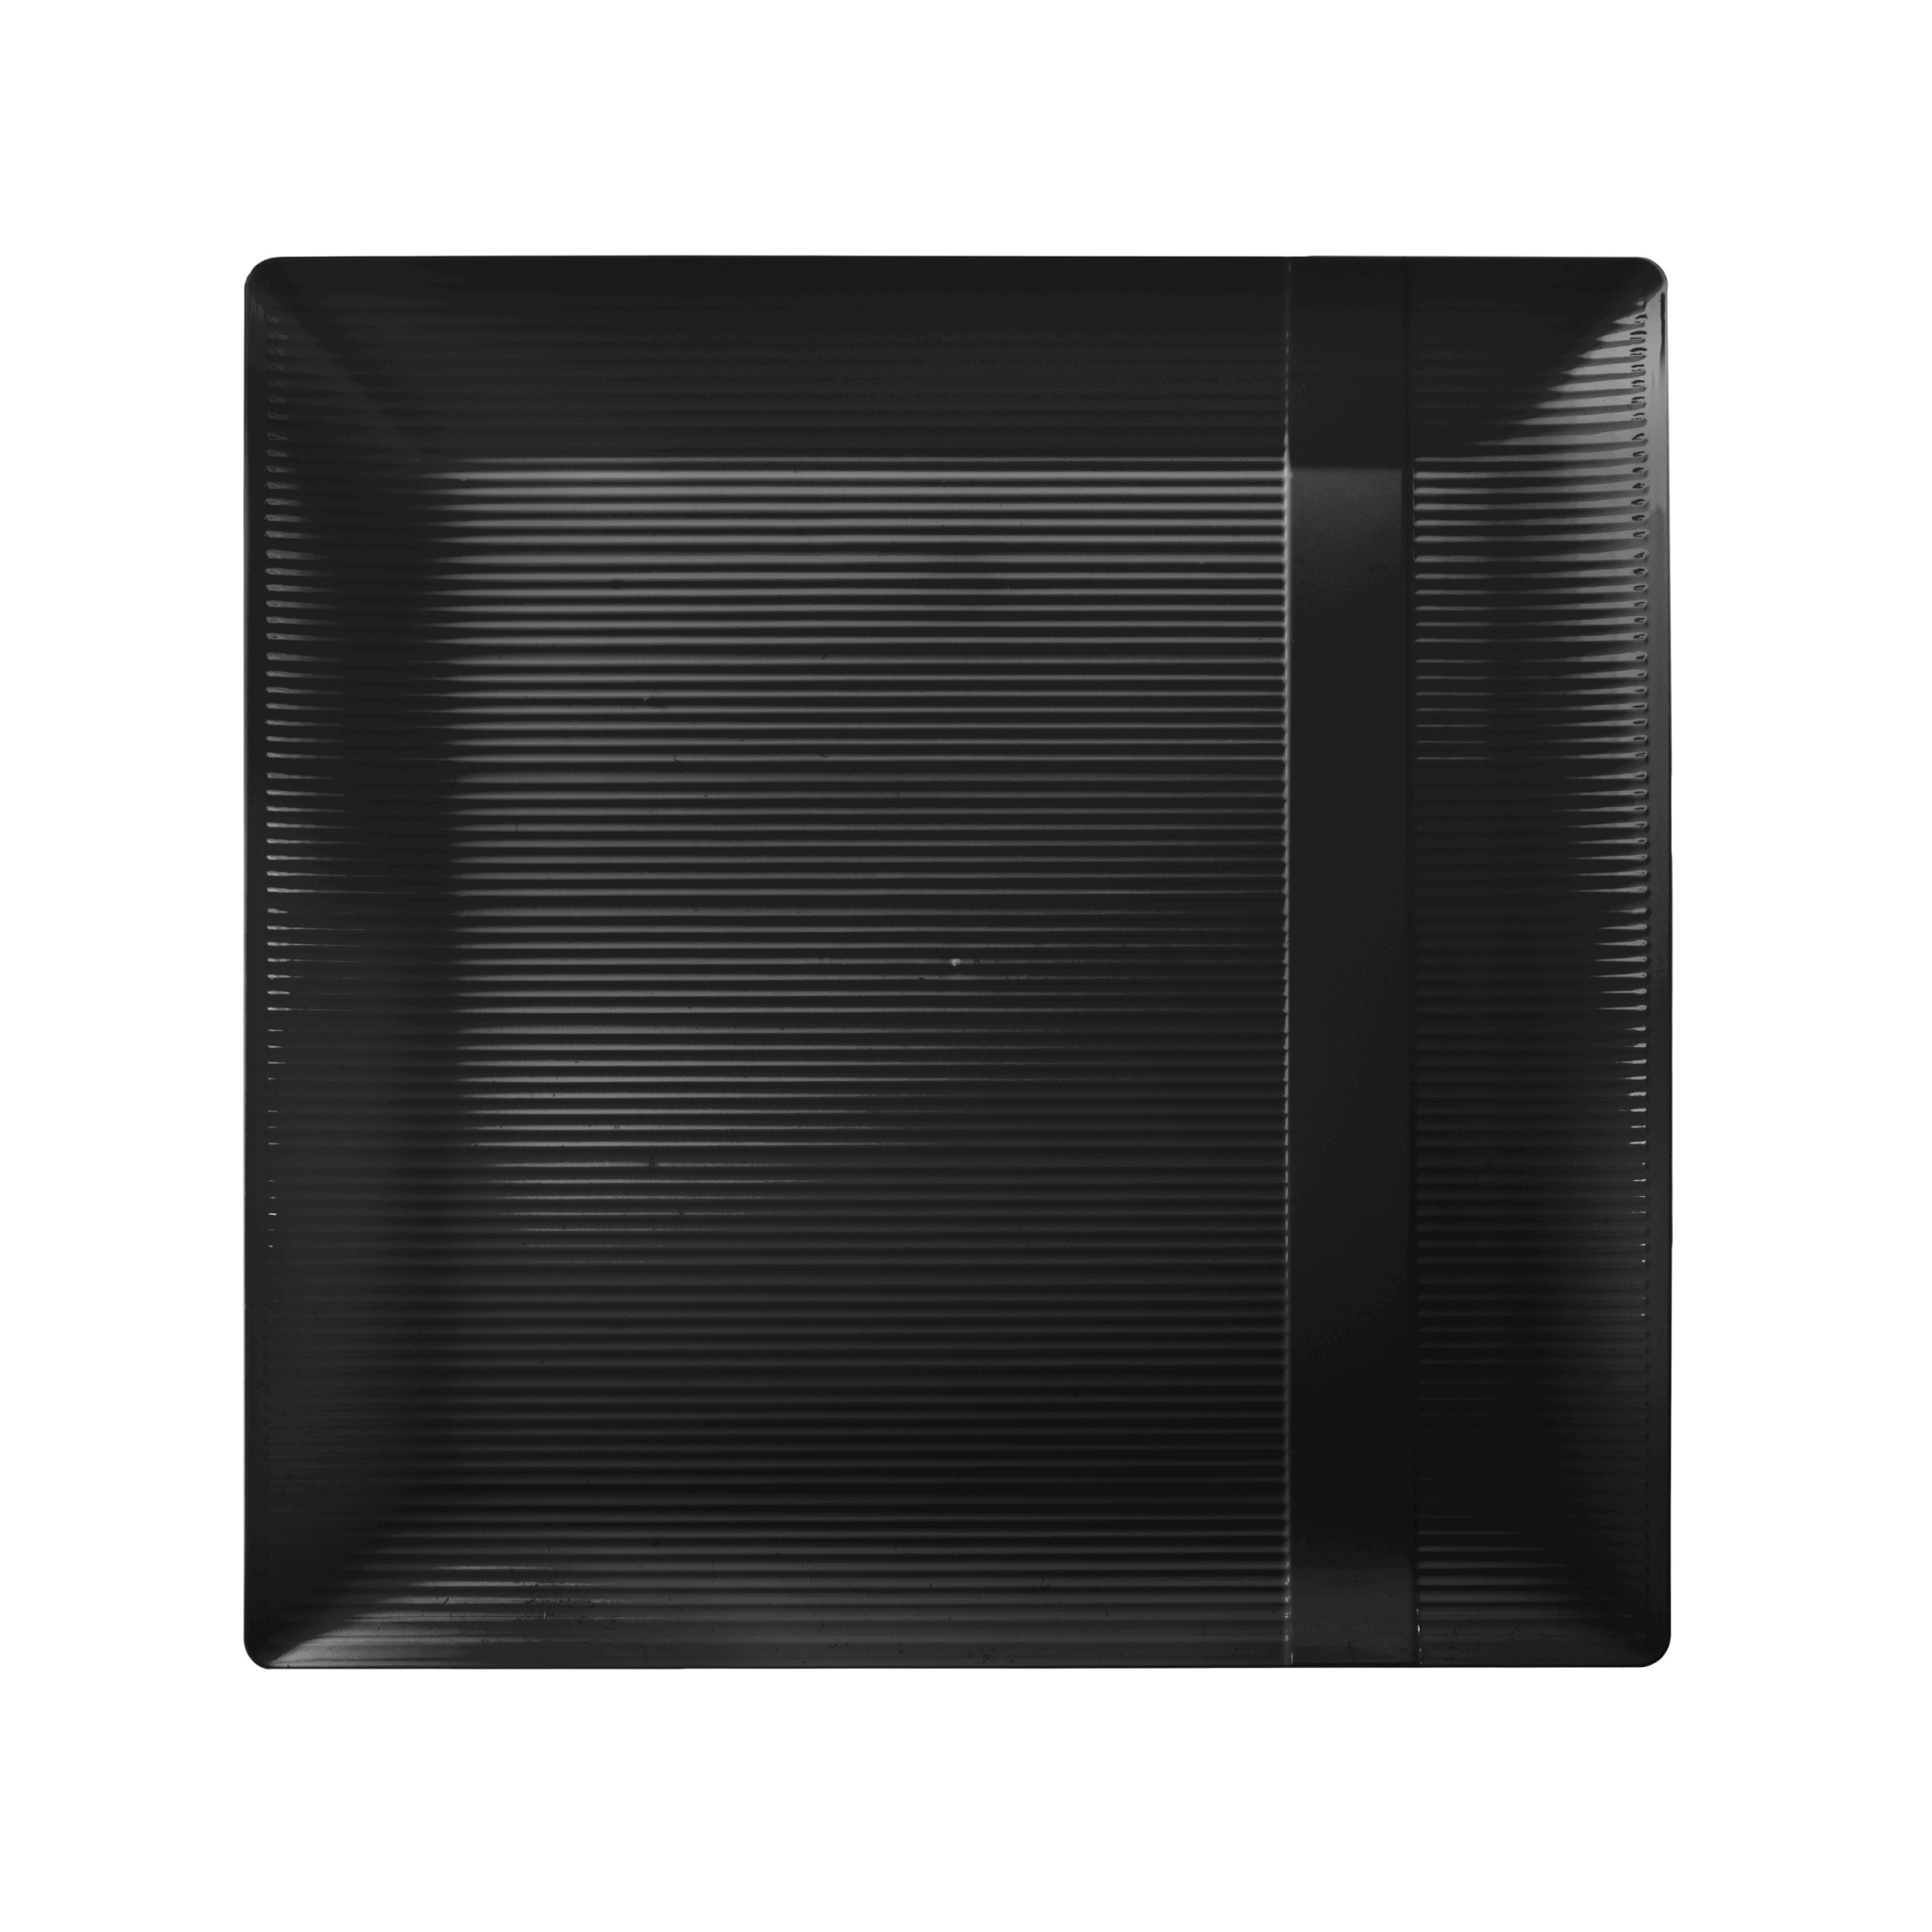 10.25" Zen Ridged Black Square Plastic Plates (120 Count) - Yom Tov Settings